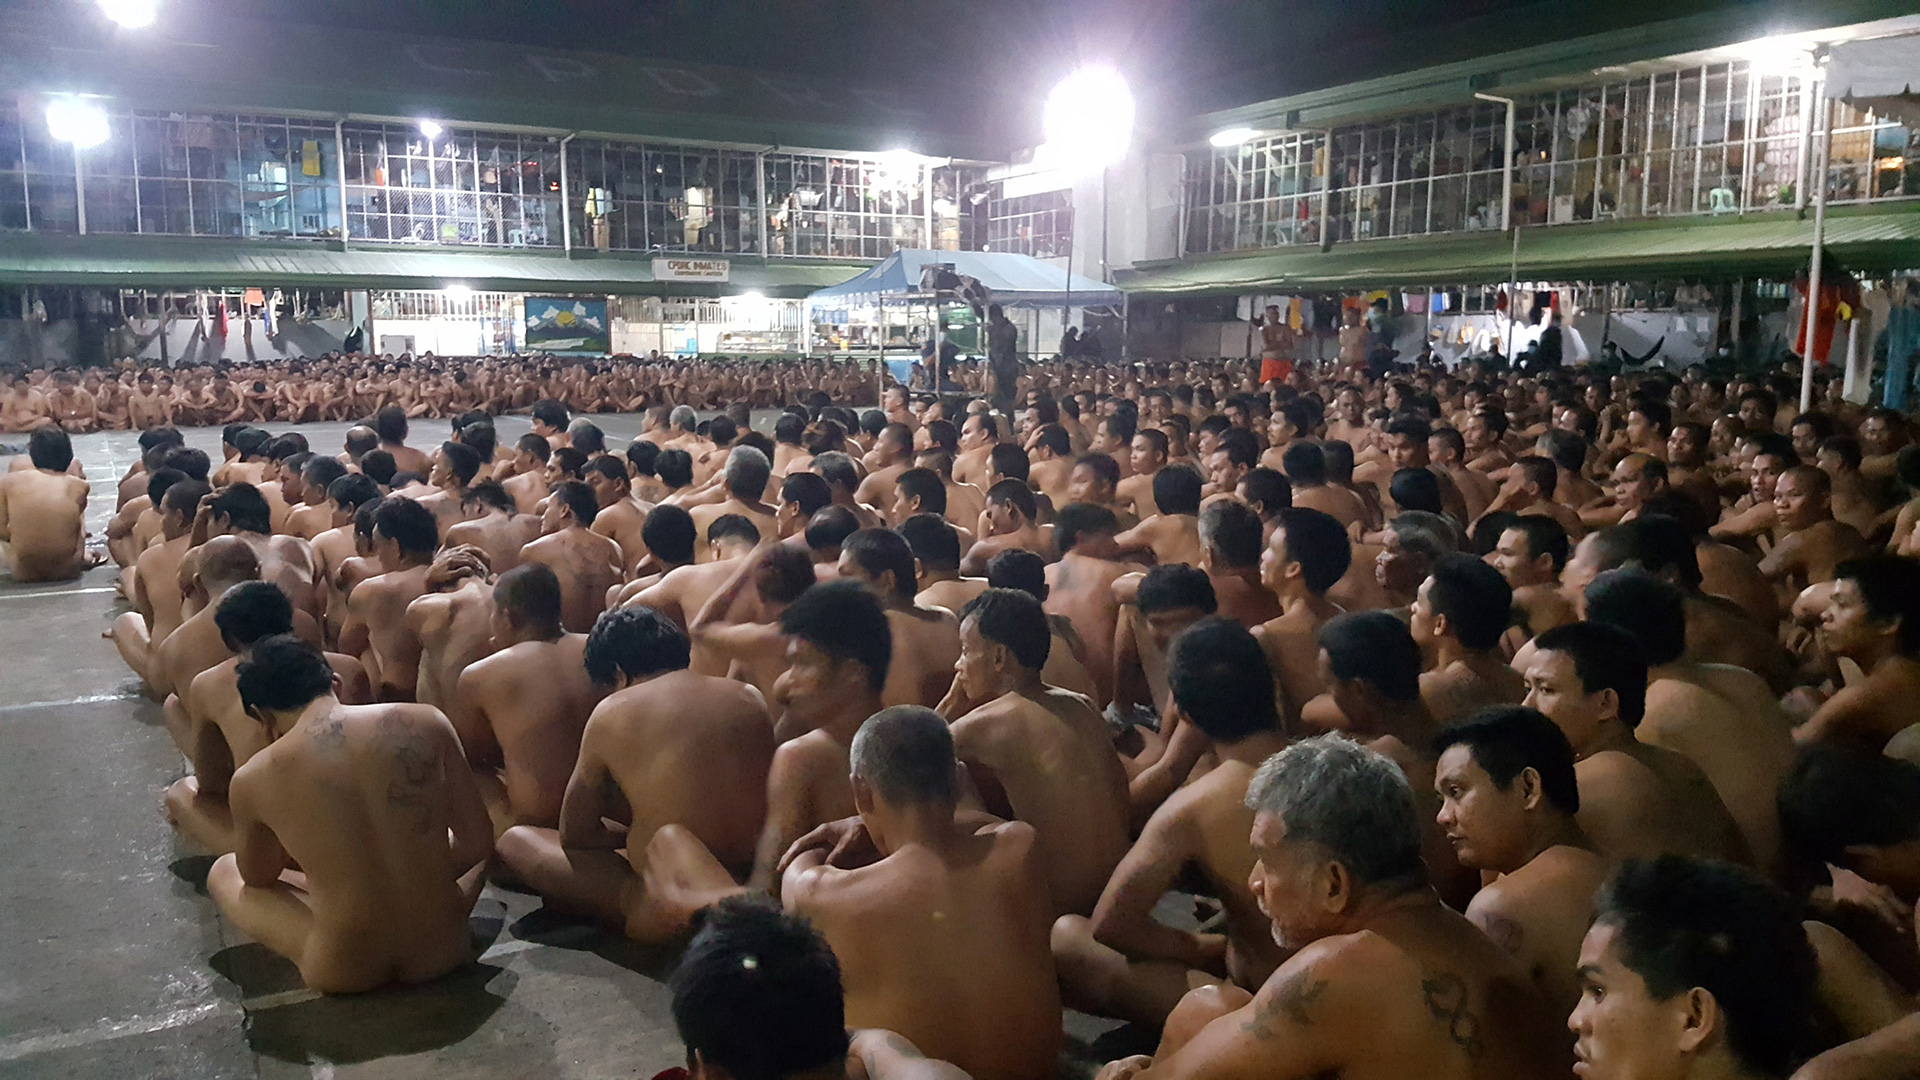 Unas fotos de presos desnudos en un registro provocan indignación en Filipinas